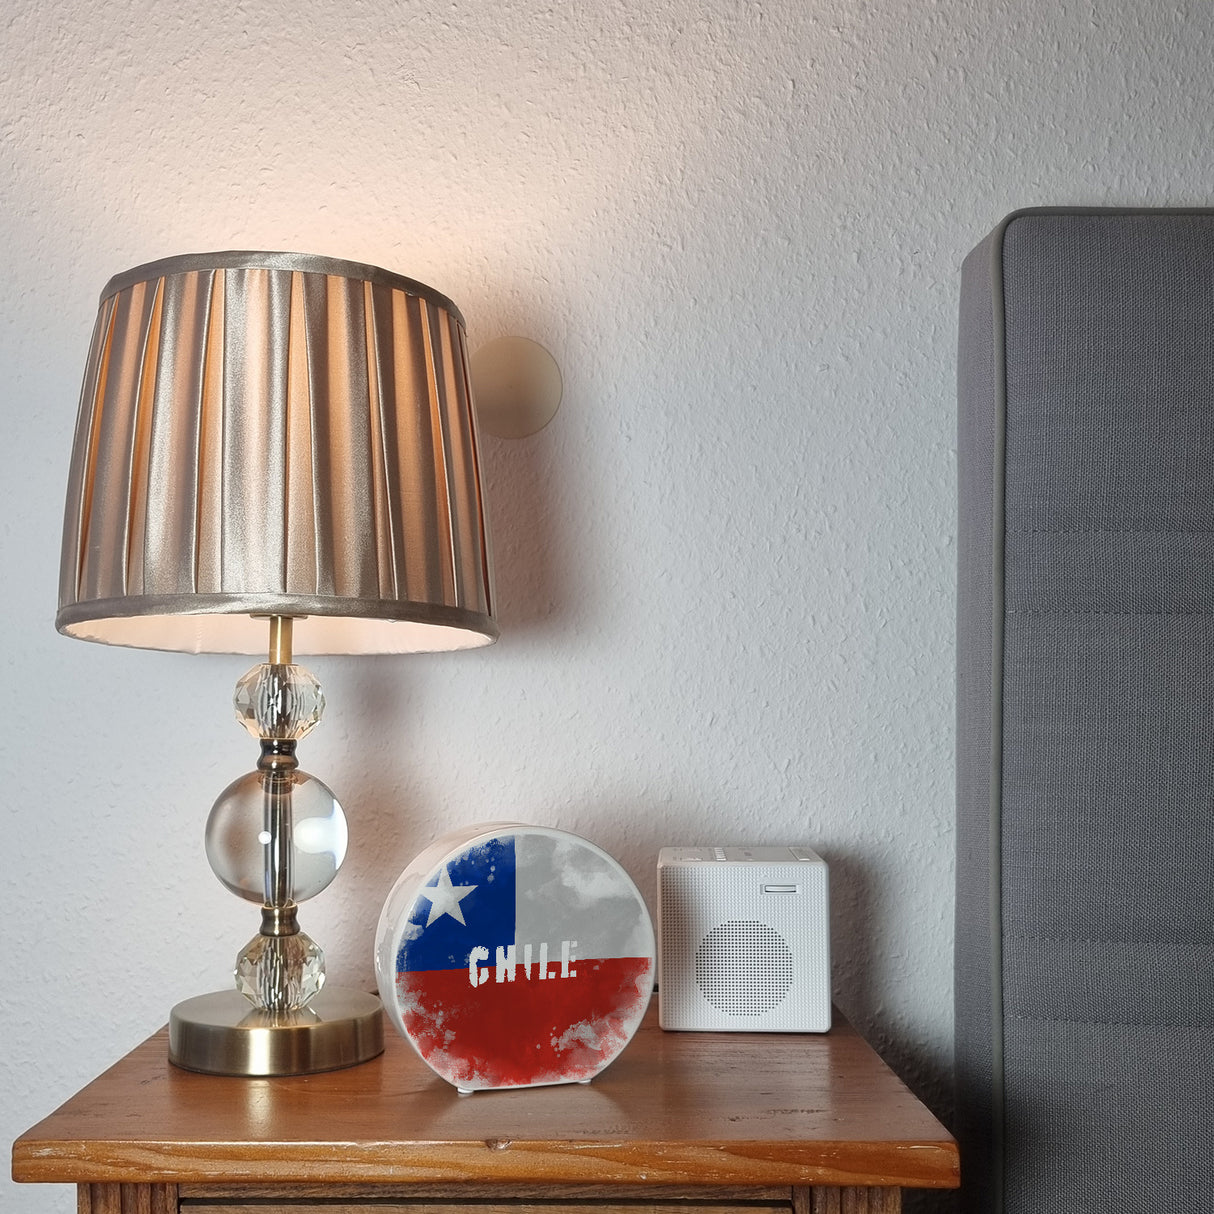 Spardose mit Chile-Flagge im Used Look - Sparschwein für Urlauber